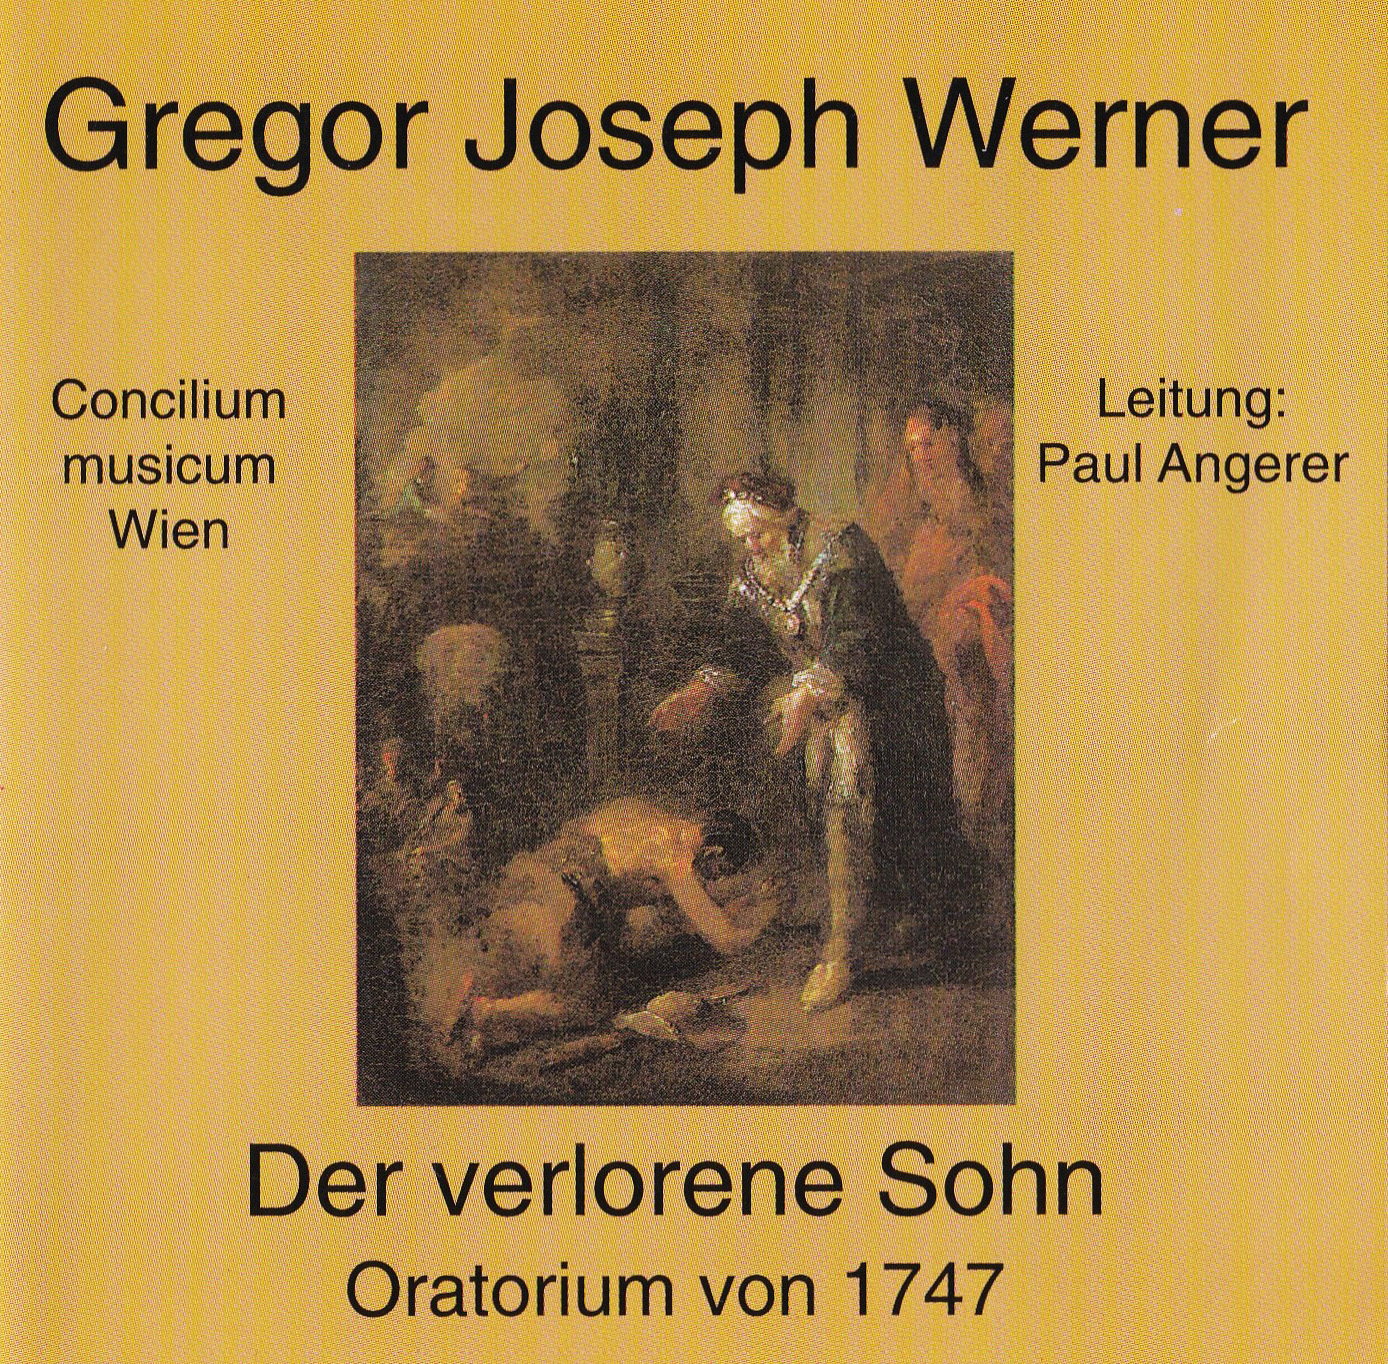 Gregor Joseph Werner – Der Verlorene Sohn